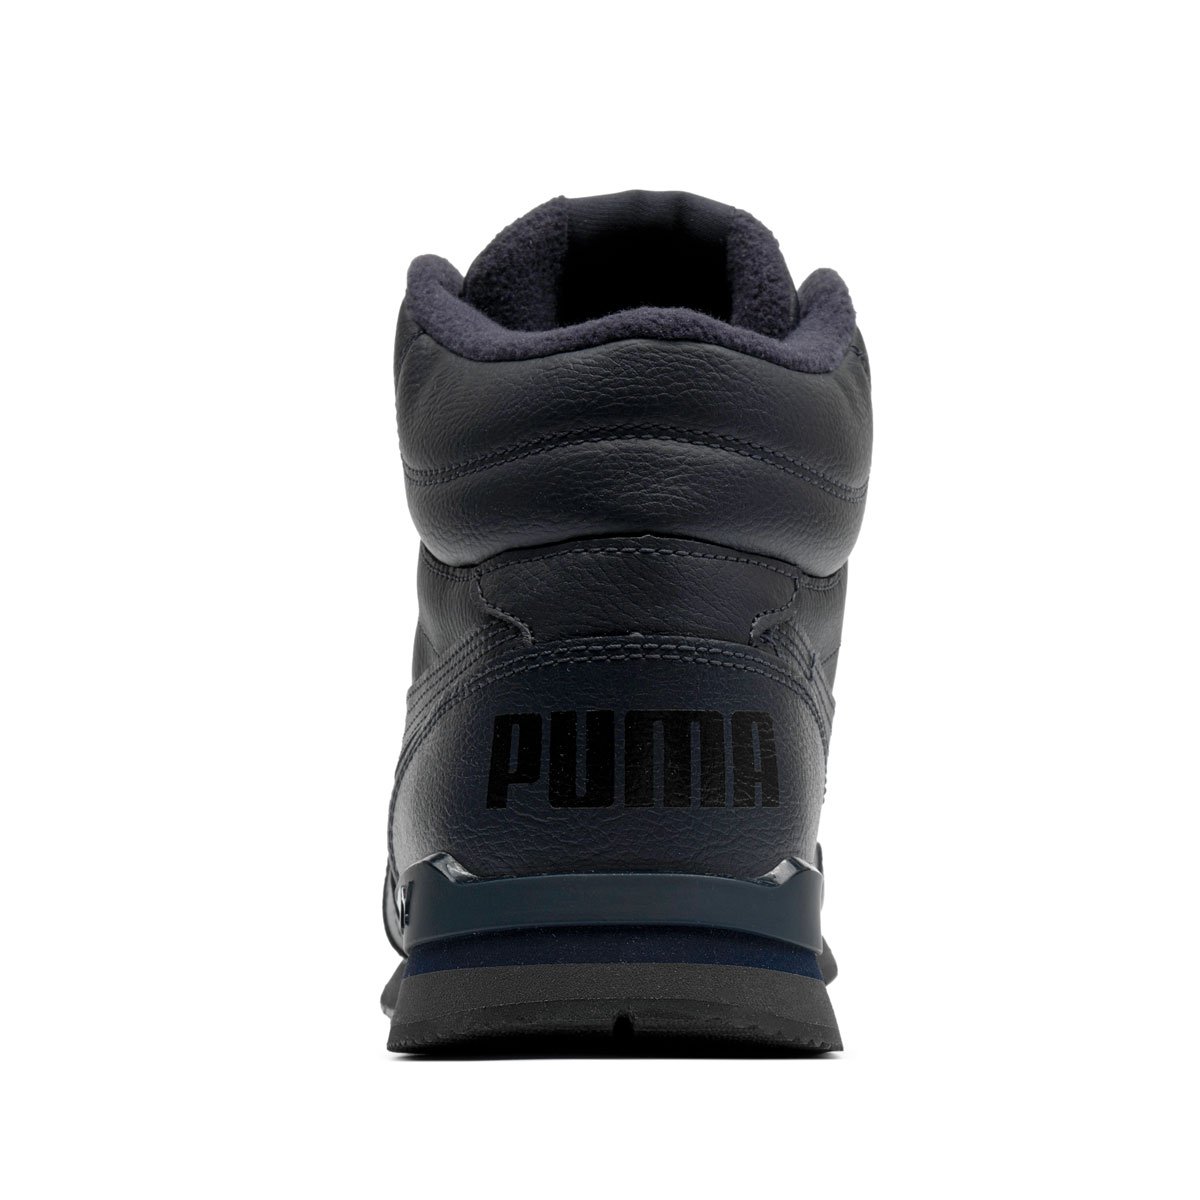 Puma ST Runner V3 Mid Leather Мъжки спортни обувки 387638-04